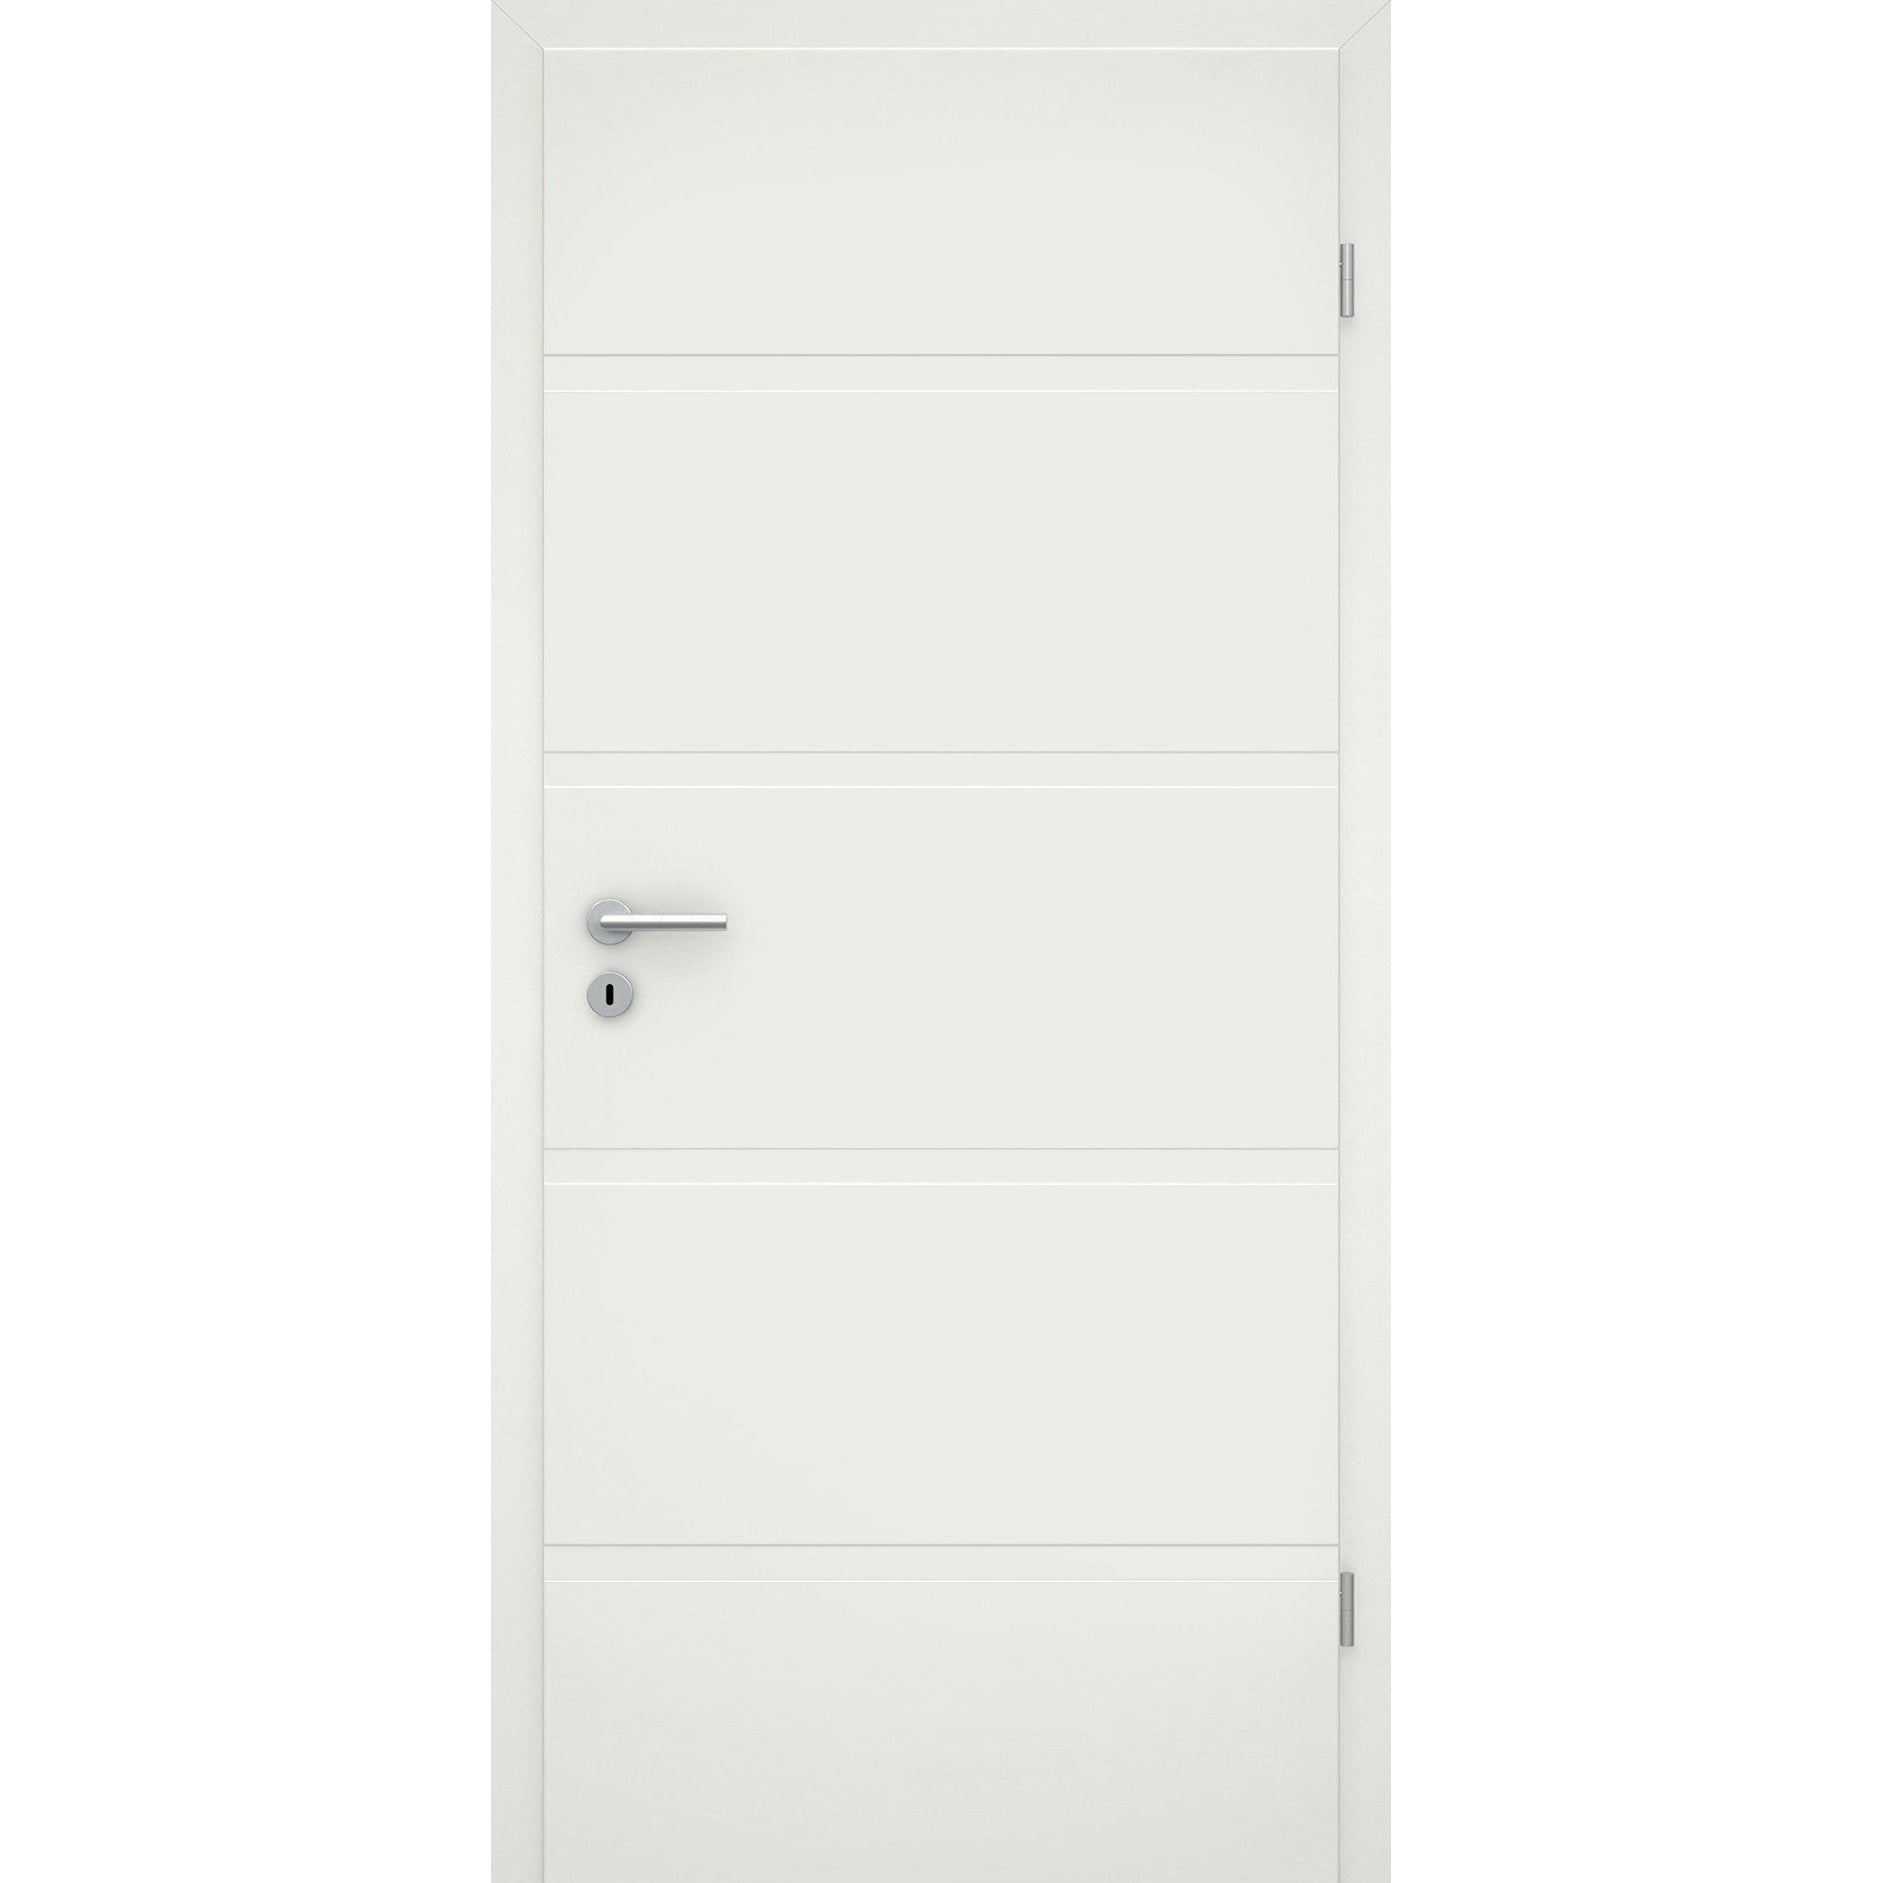 Wohnungseingangstür mit Zarge soft-weiß 4 breite Rillen Eckkante SK1 / KK3 - Modell Designtür QB41